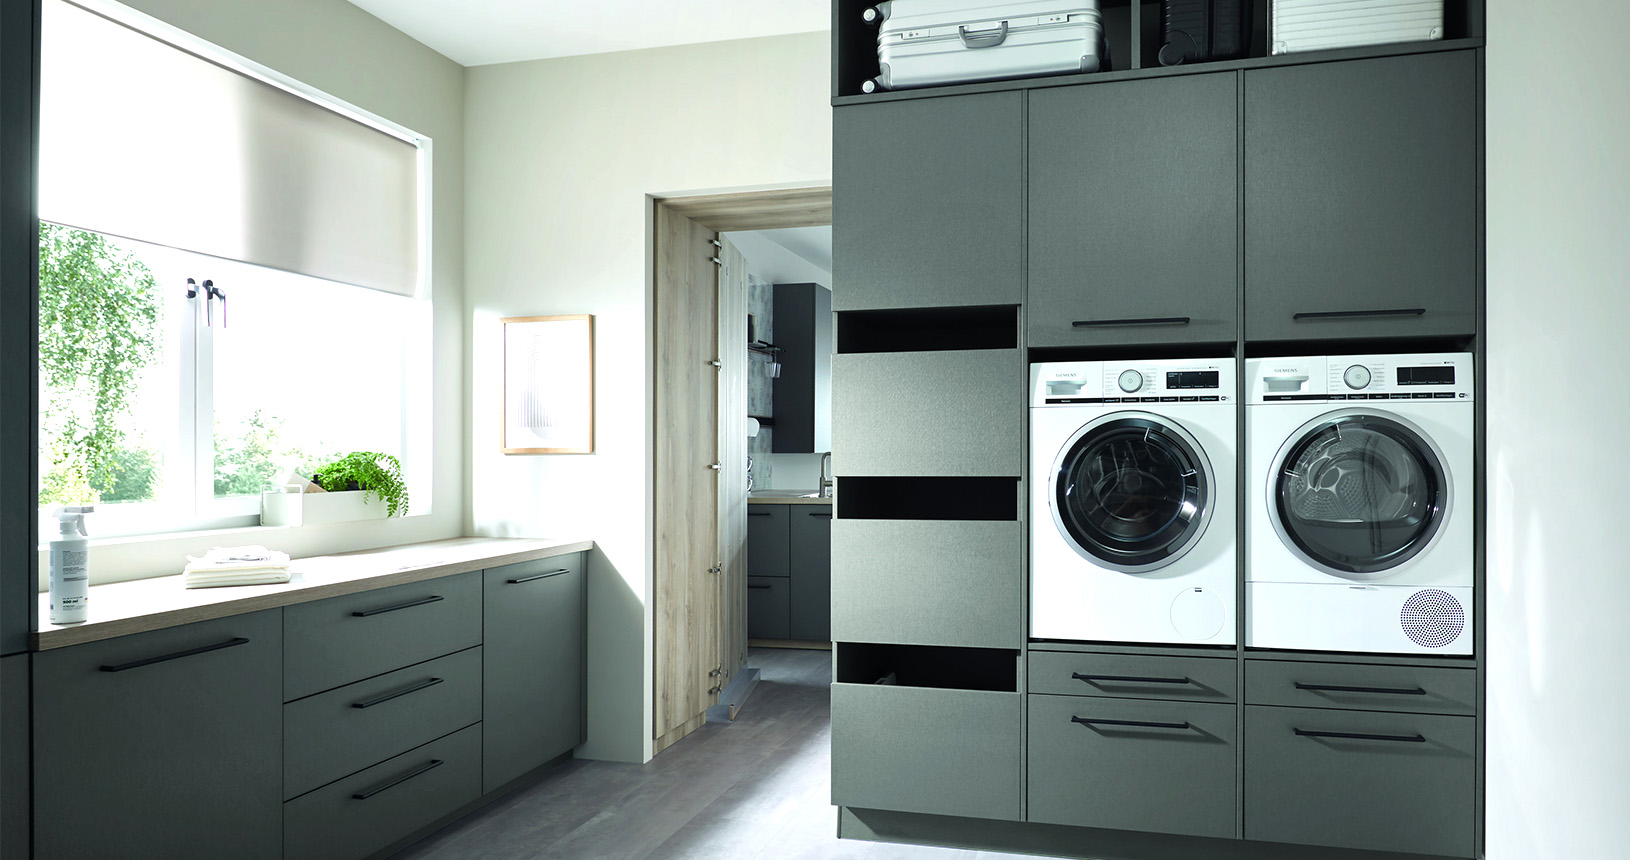 Hauswirtschaftsraum mit eingebauter Waschmaschine und Wäschetrockner